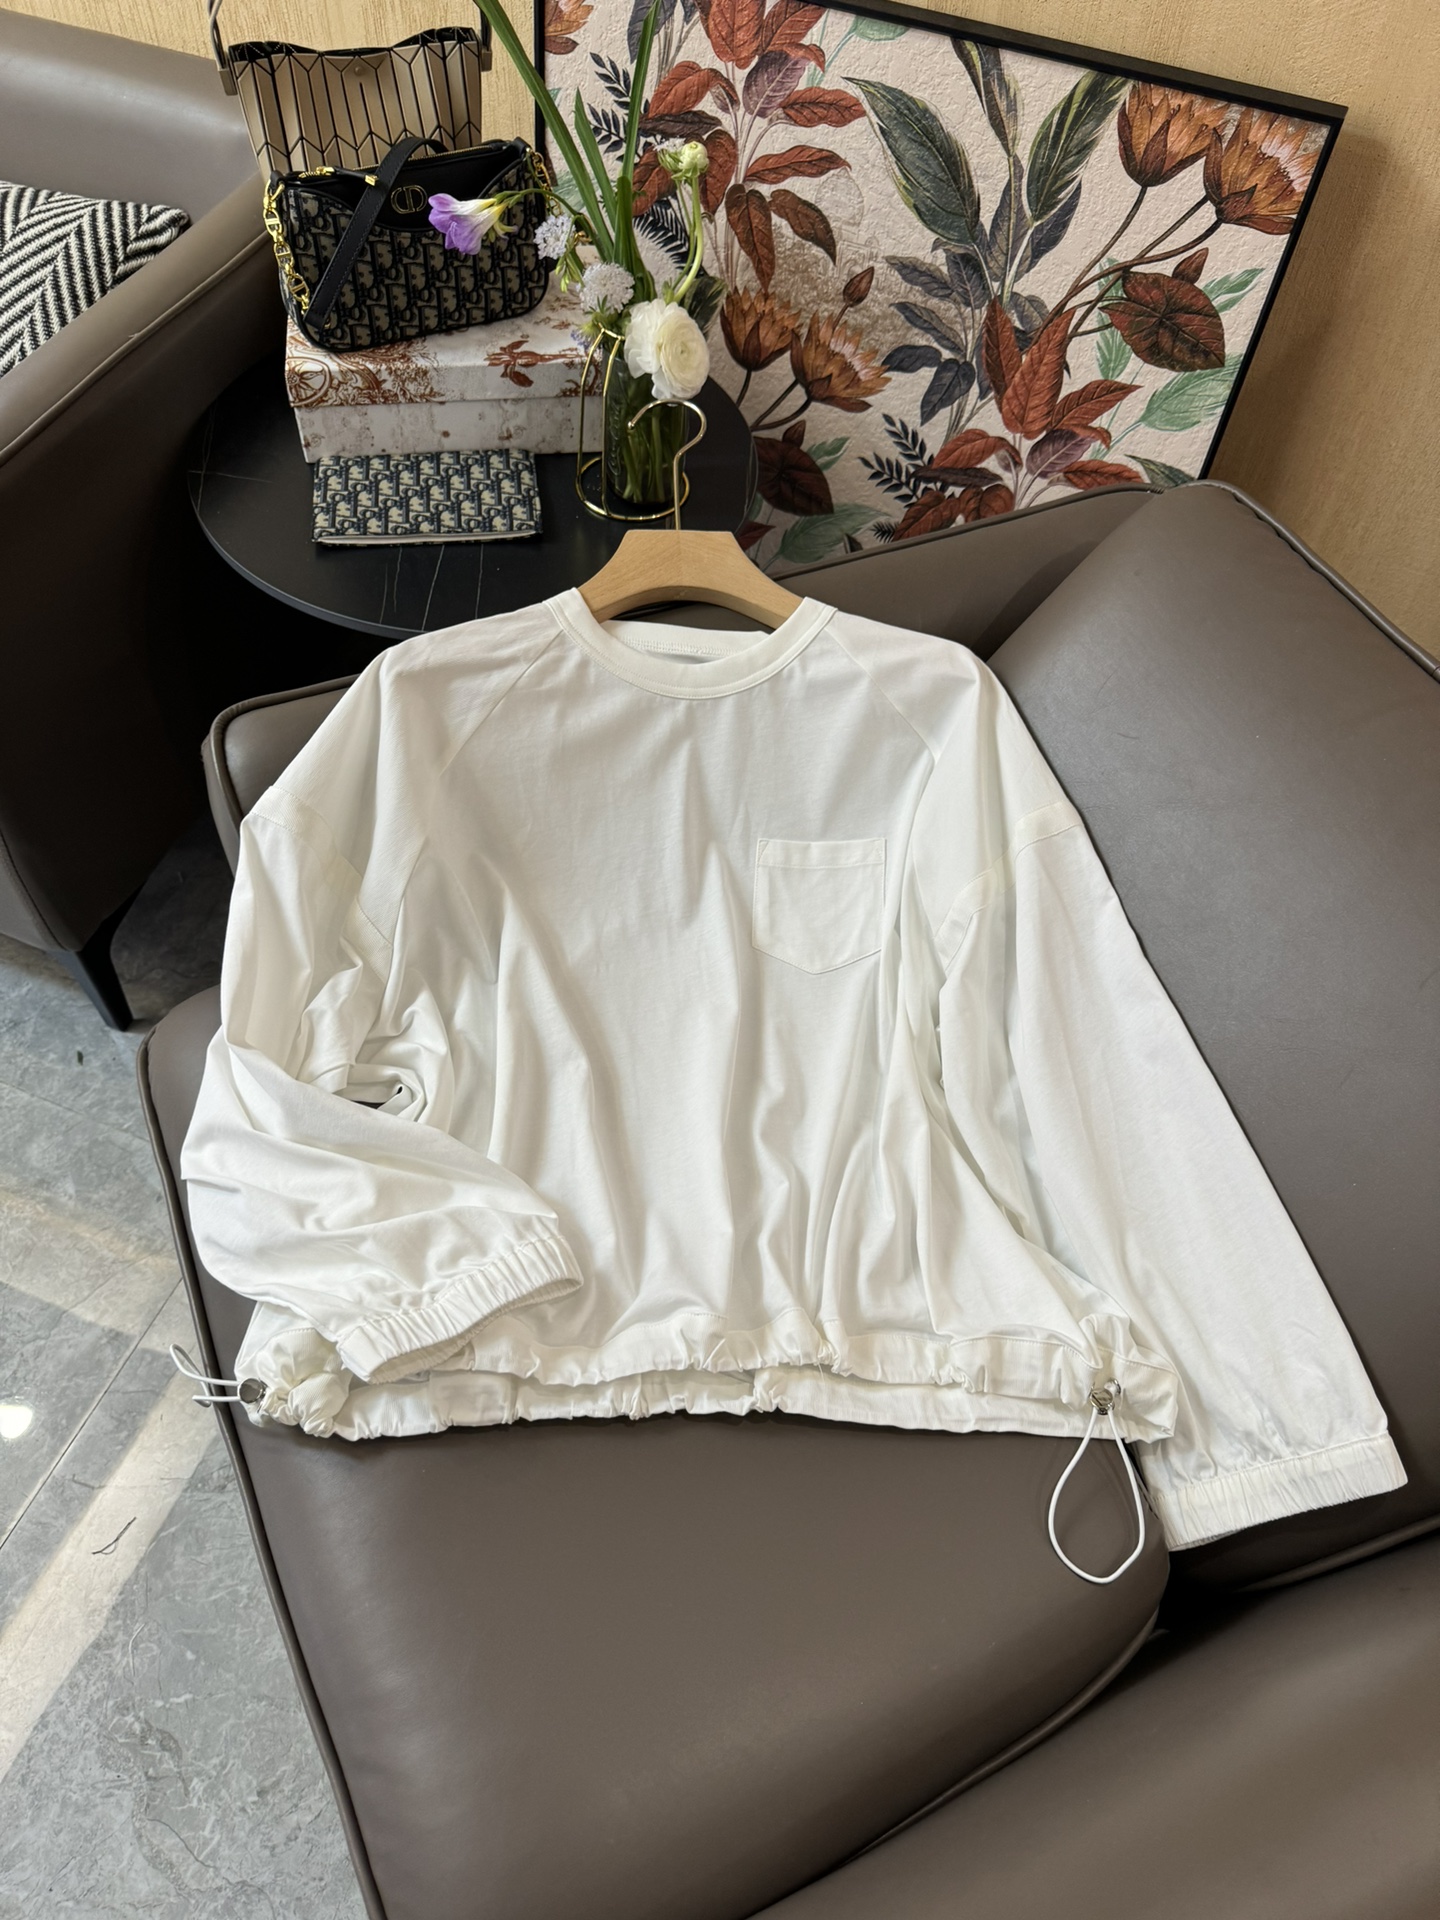 YJ011#新款衬衫原创设计大厂货长袖衬衫白色SML